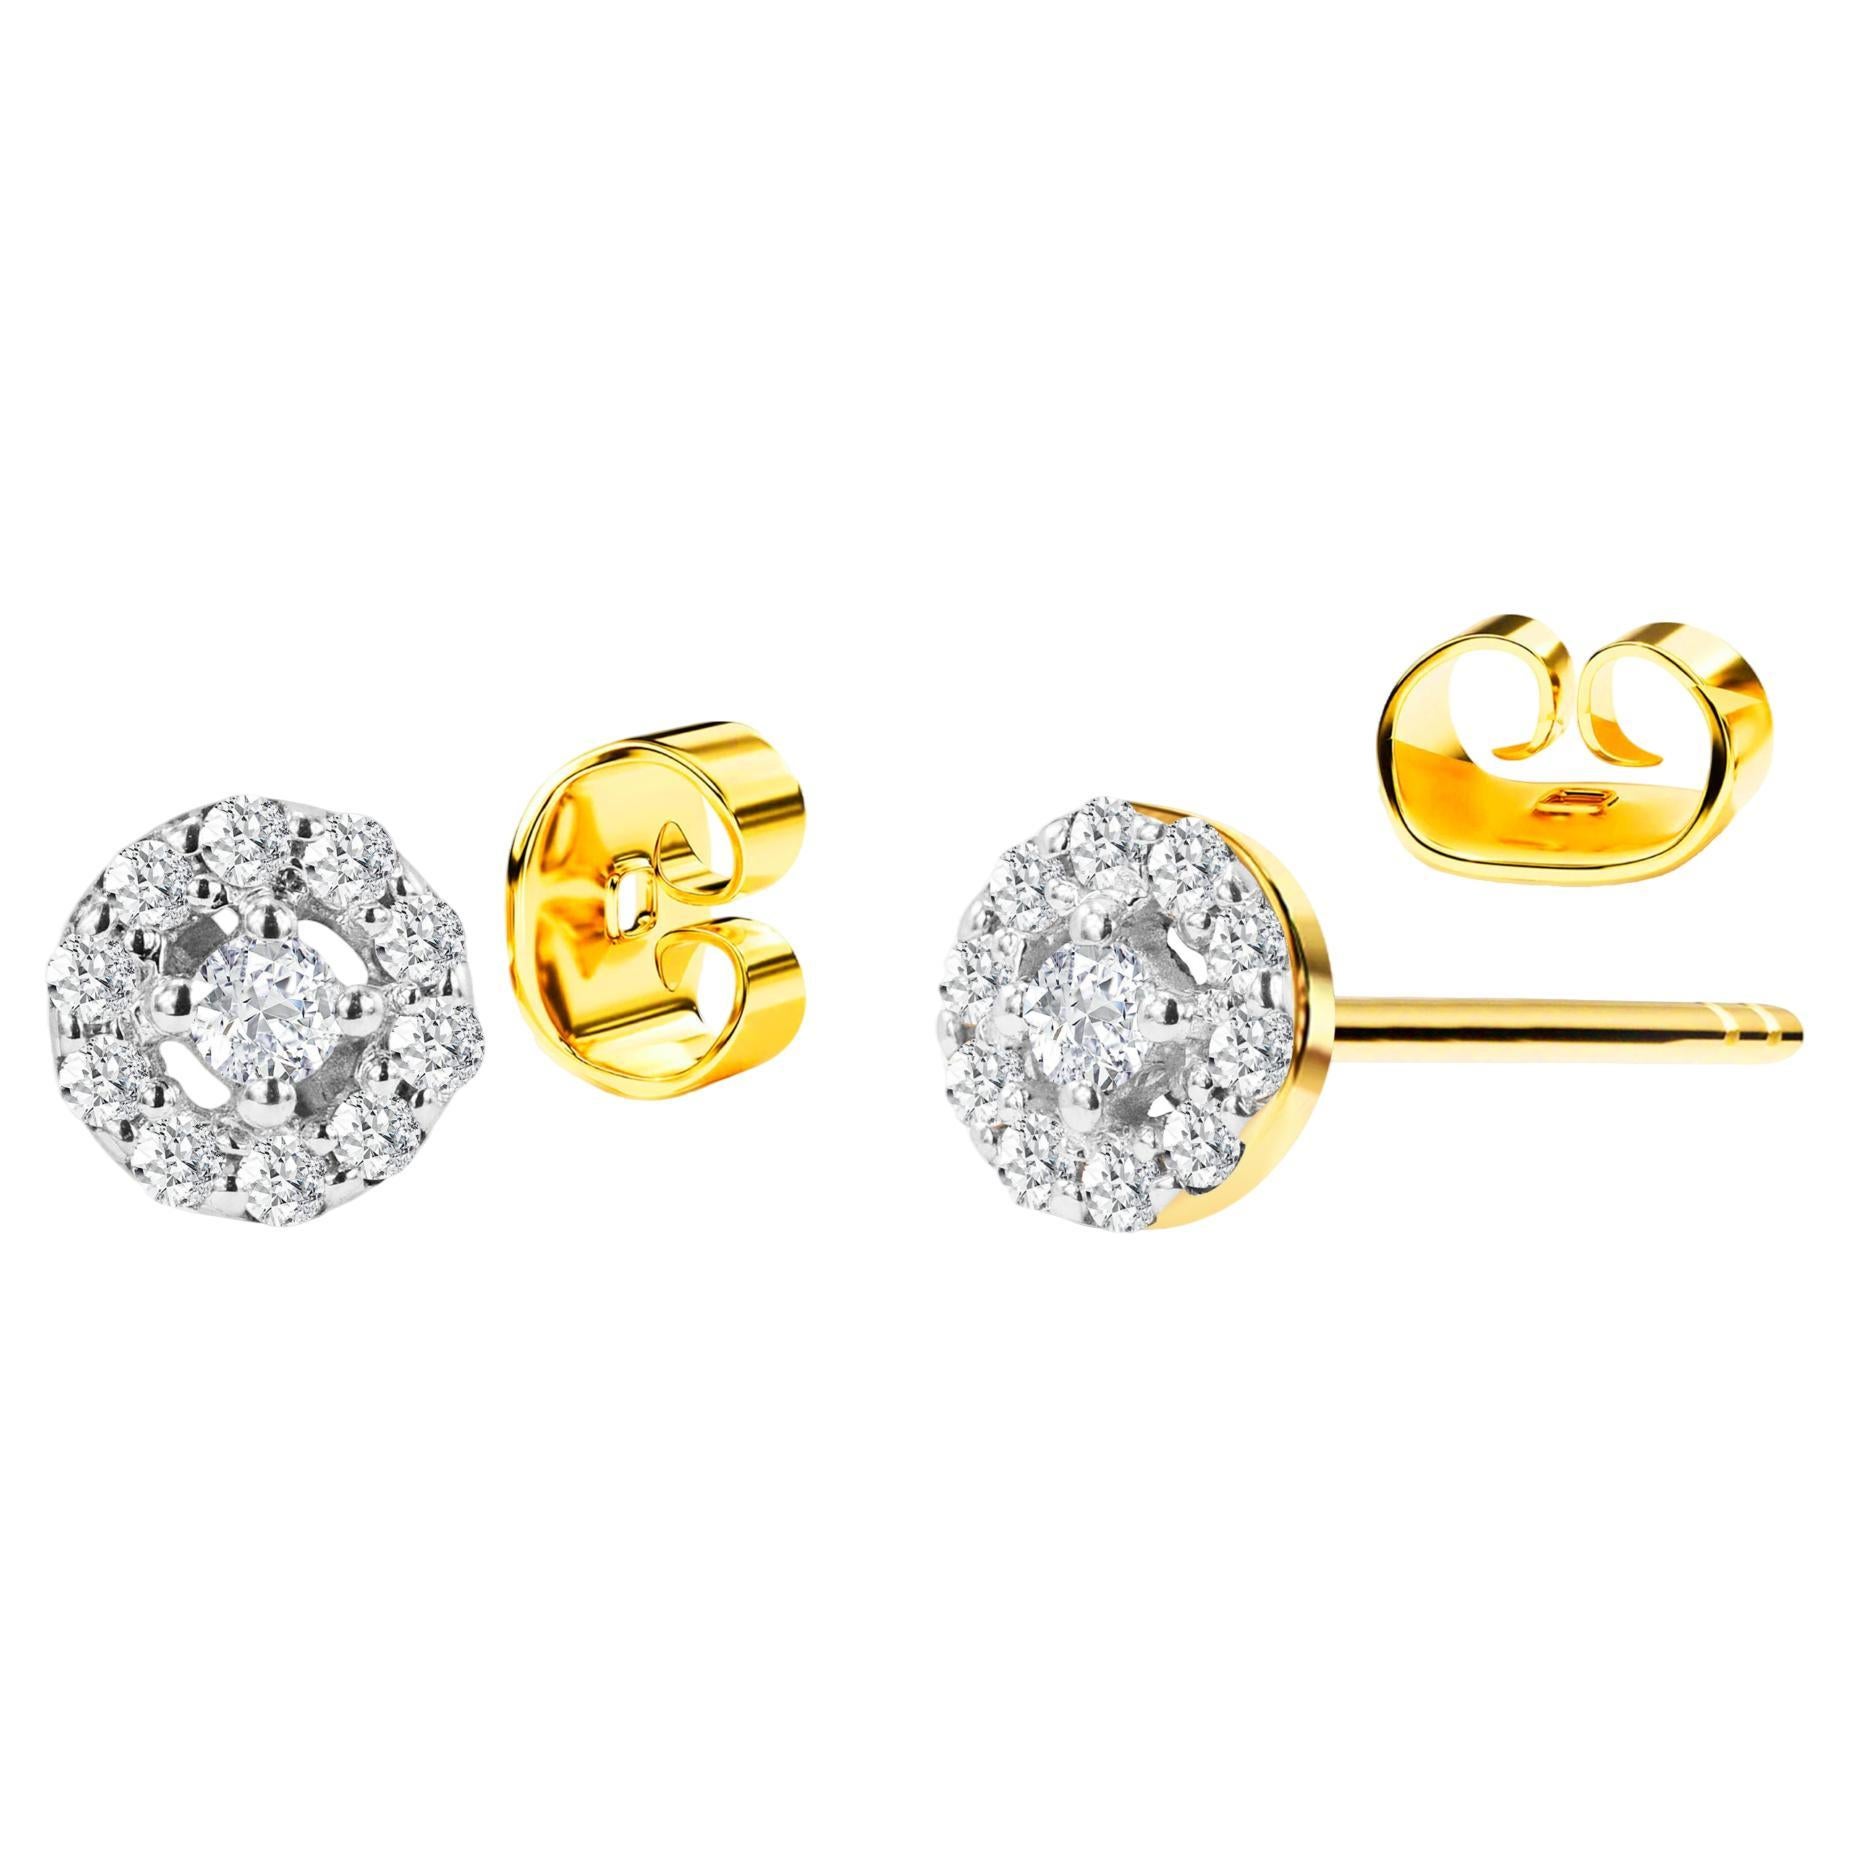 18k Gold Diamond Studs Halo Diamond Earrings Wedding Earrings